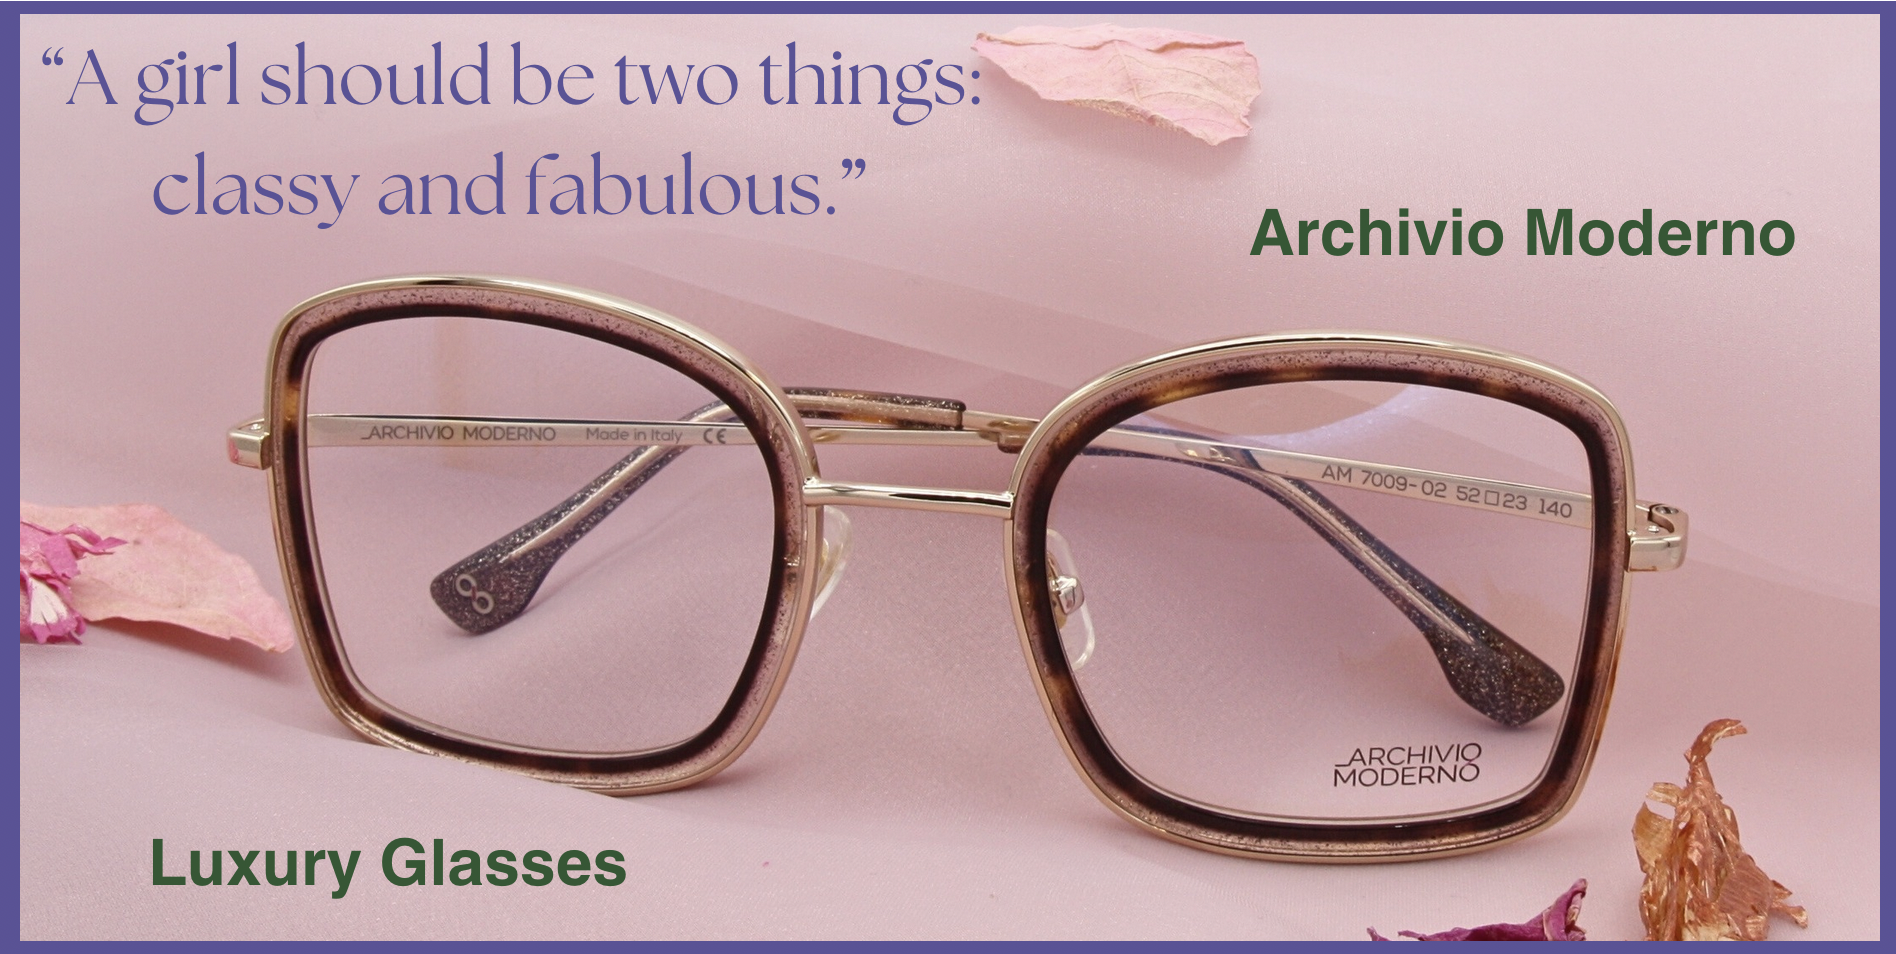 Archivio Moderno 7009 large square style prescription glasses with glitter - wonderful!